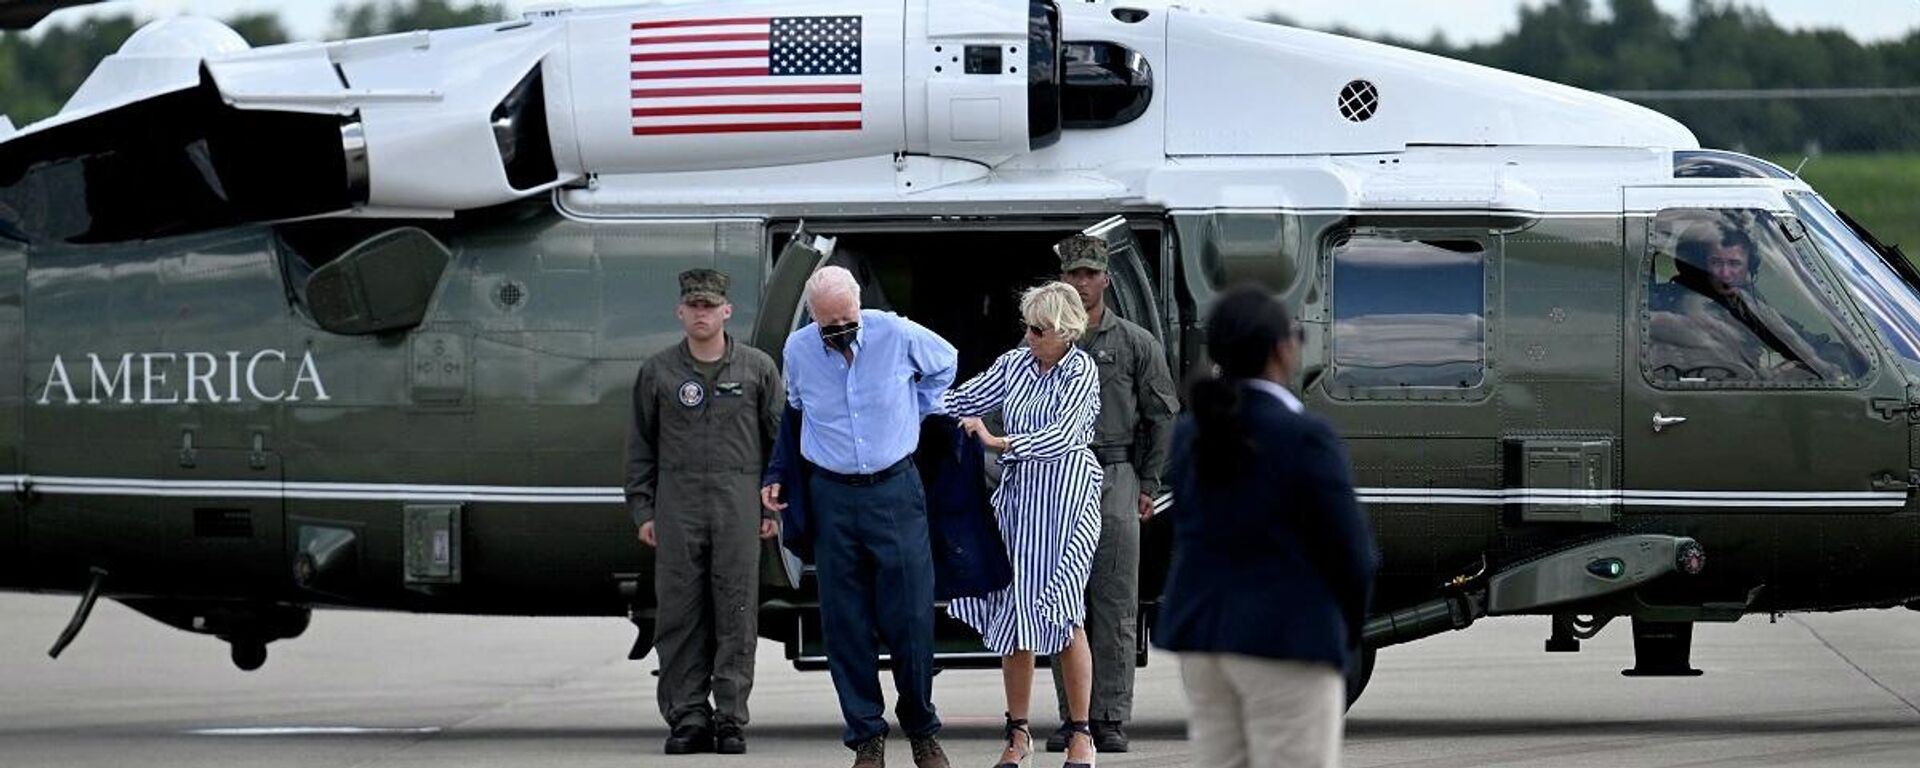 Dün helikopterden indikten sonra ceketini giyemeyen ABD Başkanı Joe Biden, daha sonra gözlüğünü düşürdü. Öte yandan Biden'ın hemen arkasında bulunan askerin şaşırmış yüz ifadesi ise dikkat çekti. - Sputnik Türkiye, 1920, 09.08.2022